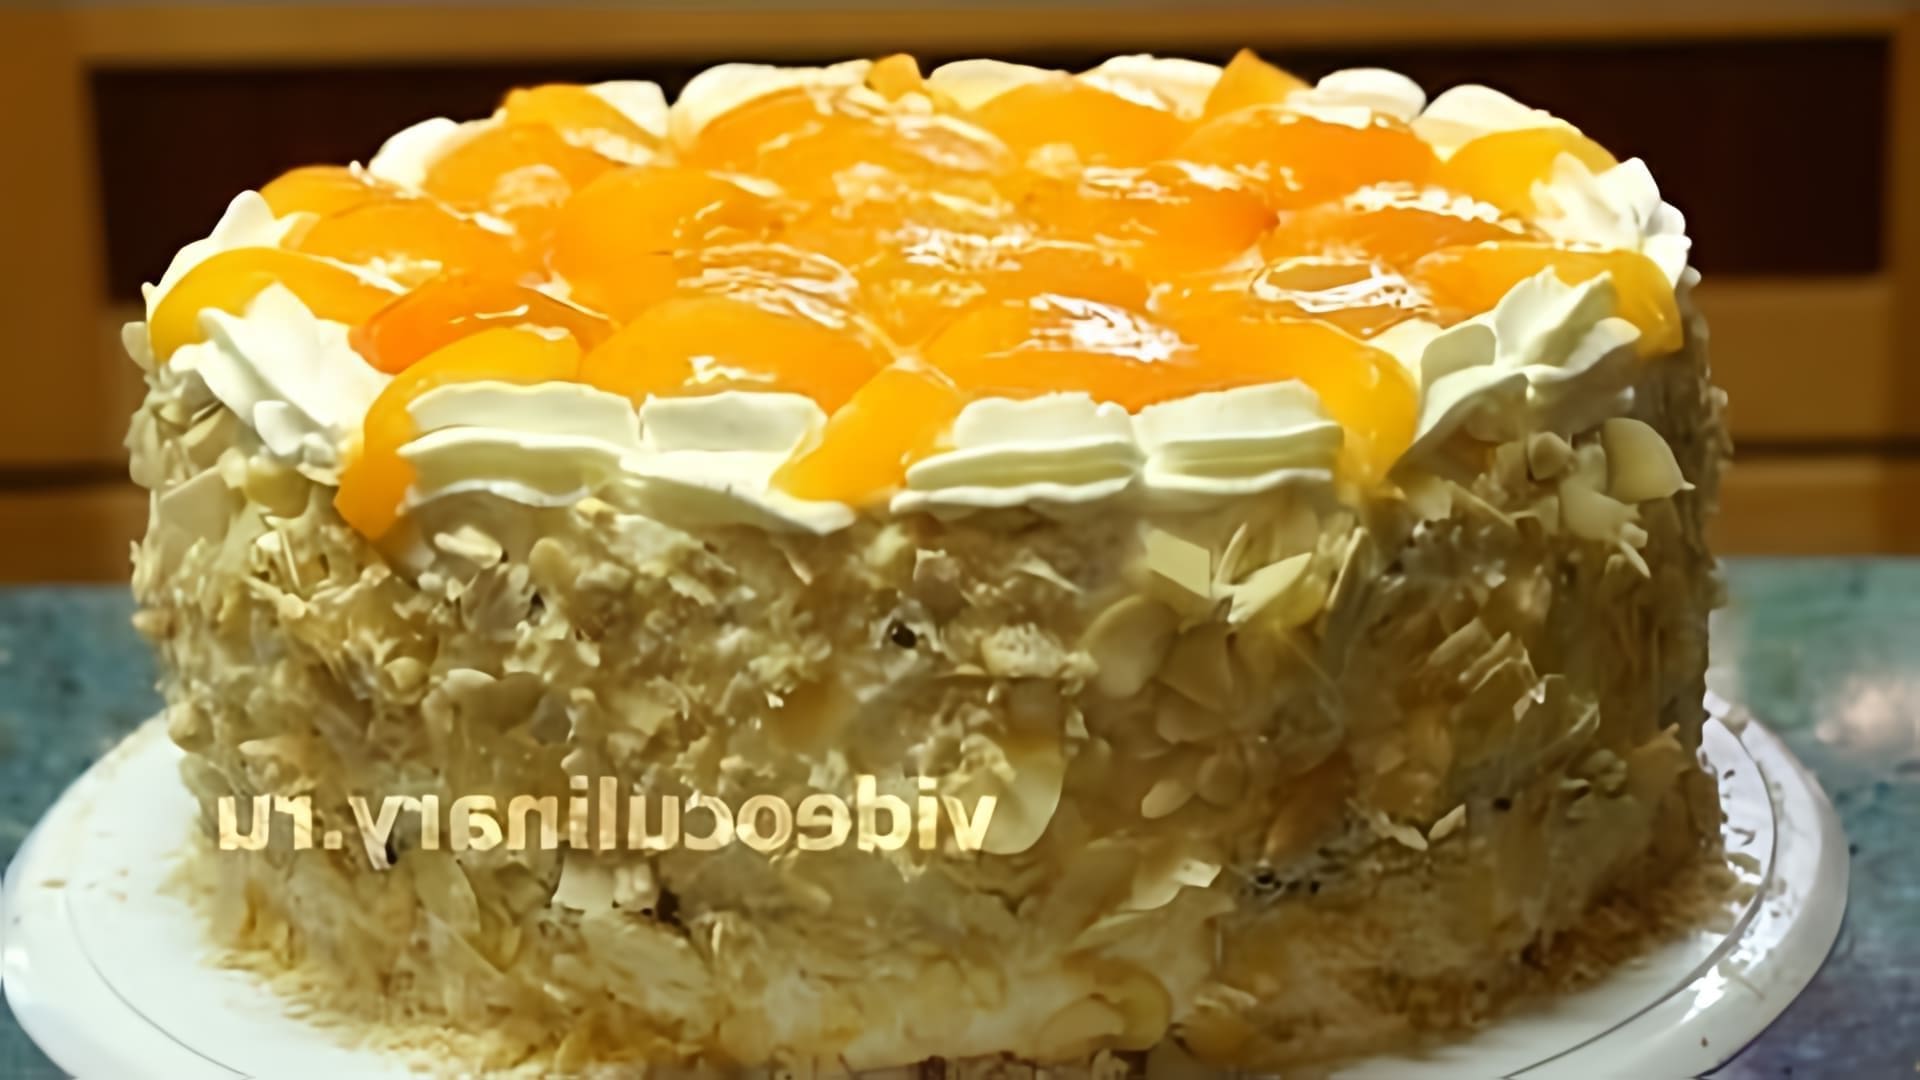 В этом видео демонстрируется рецепт приготовления бисквитного торта "Абрикос" от Бабушки Эммы